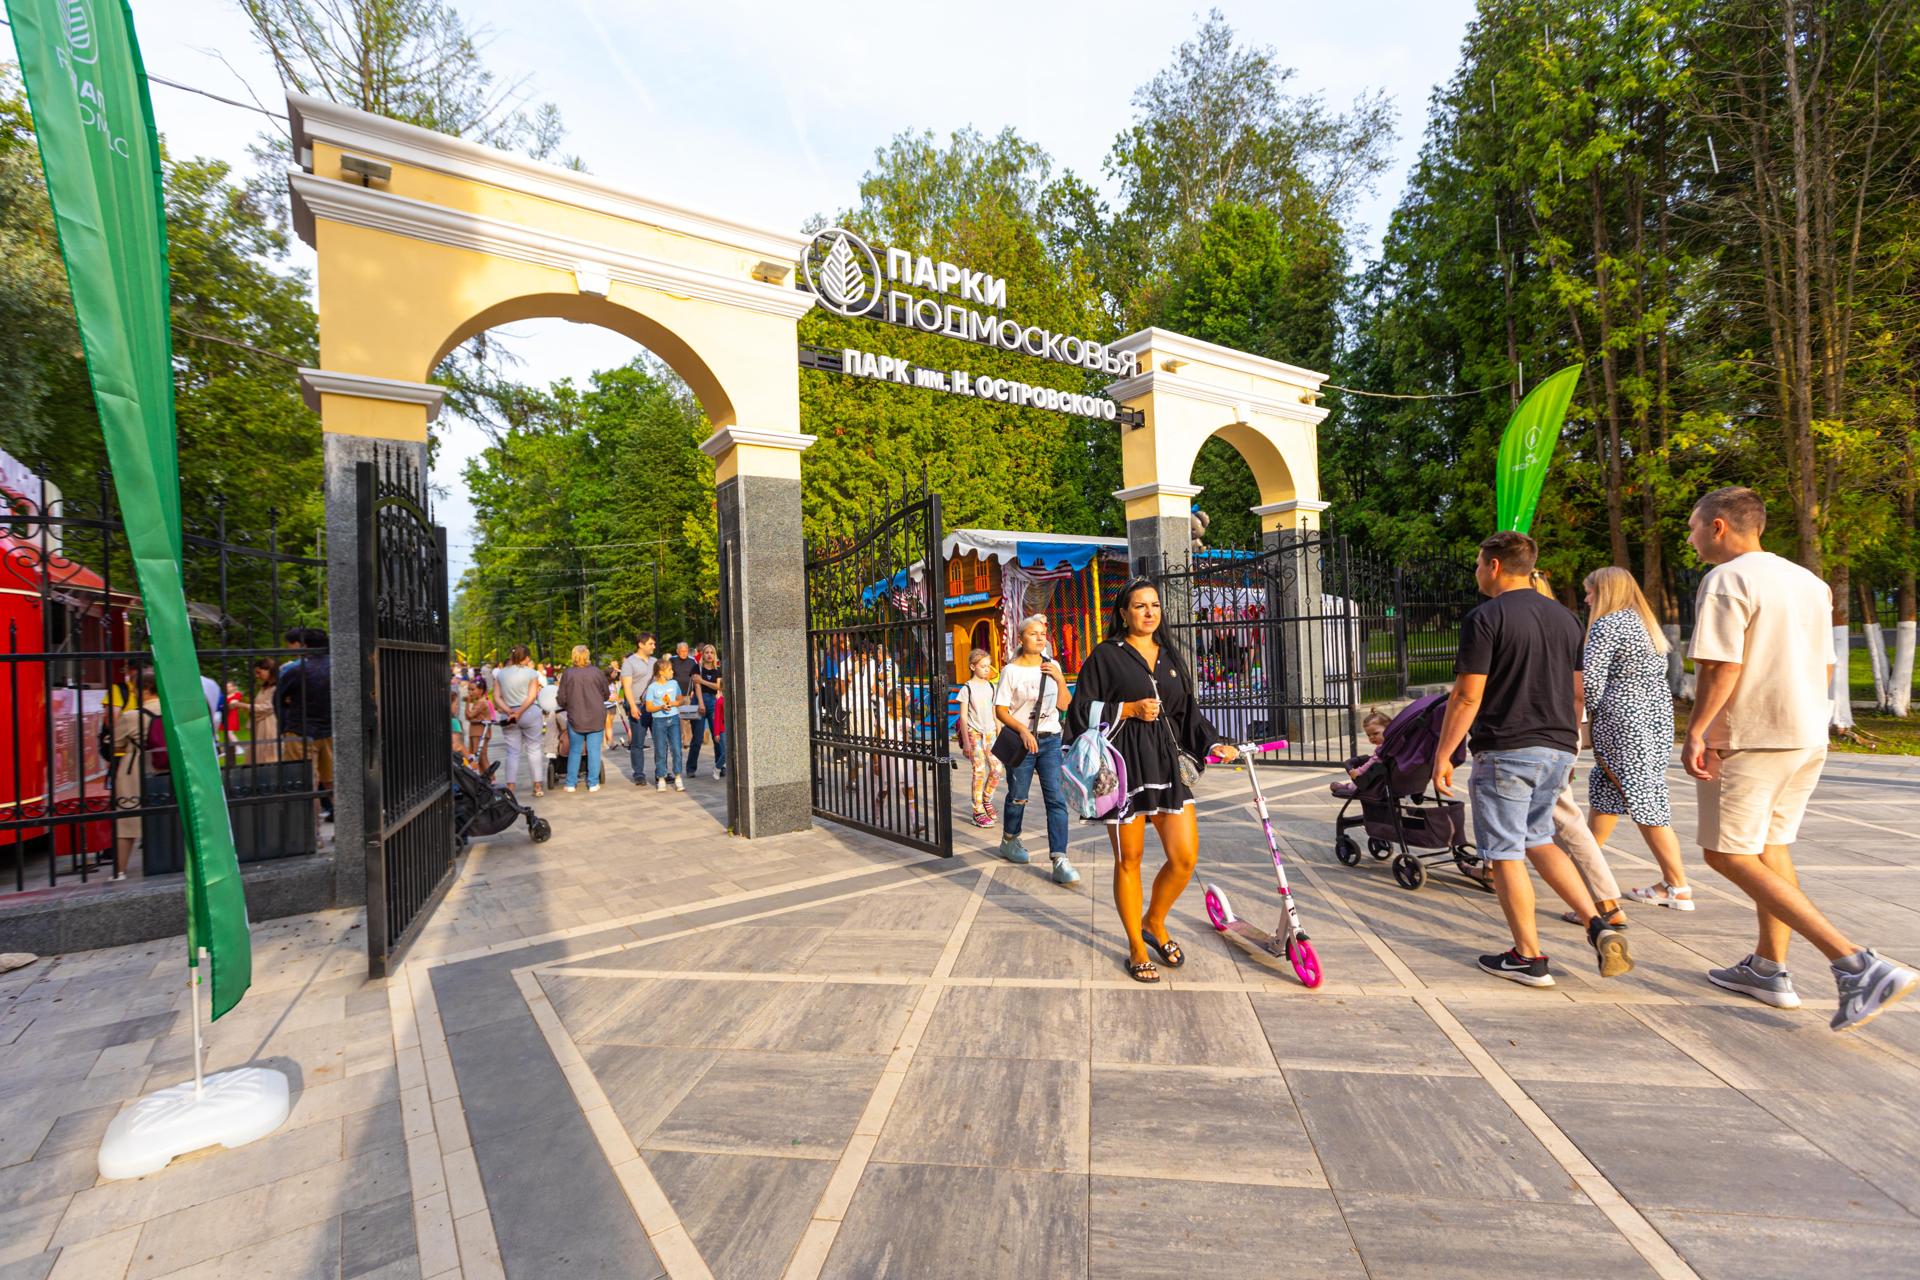 Более 35 тысяч человек посетили два обновленных парка в день открытия в Подмосковье